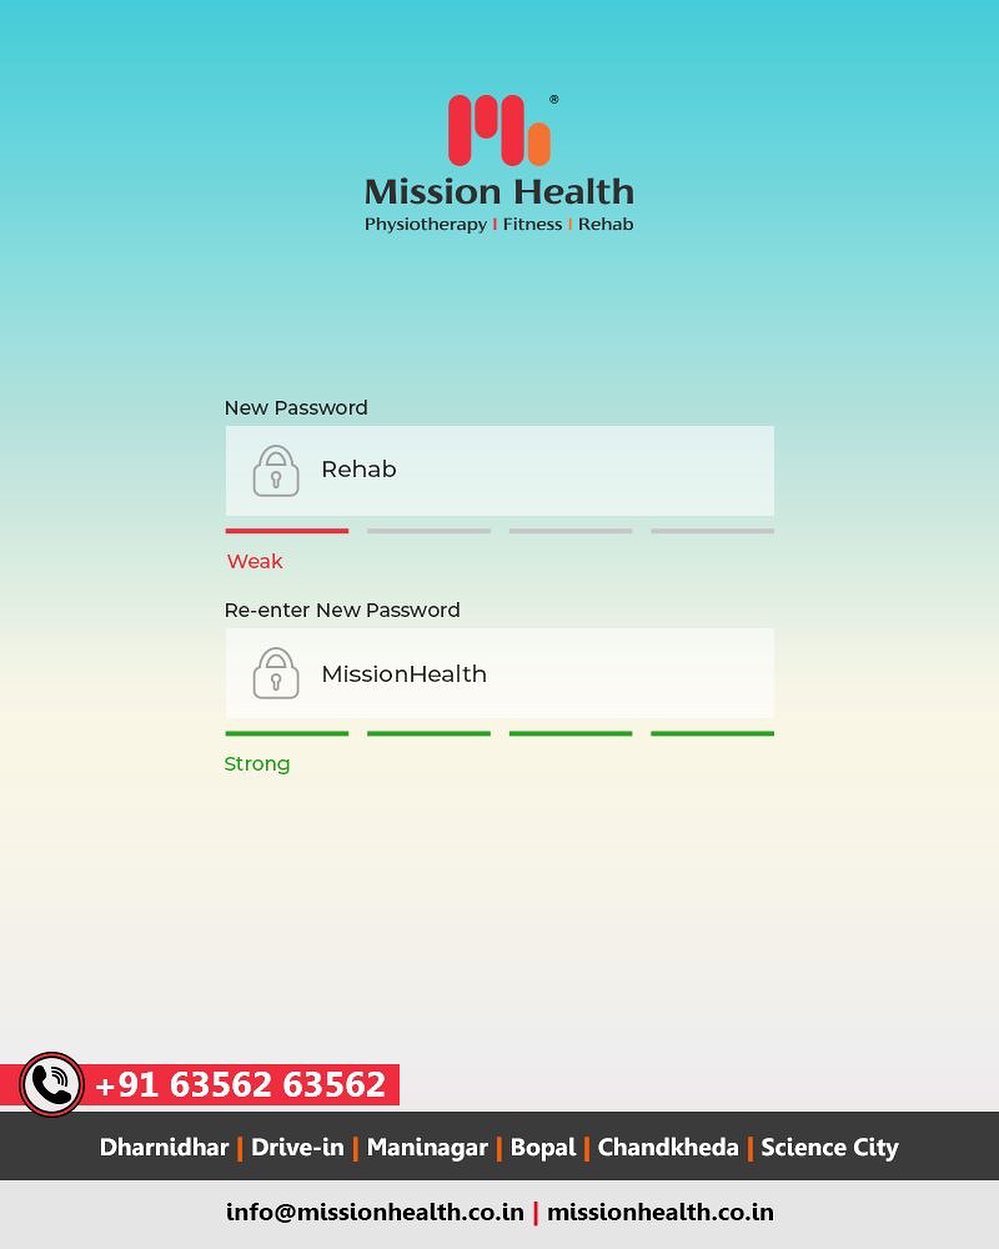 Your password to rehab is Mission Health.

#TrendingNow #TrendingFormat #ReEnterPassword #NewPassword #Password #Trending #TrendSpot #missionhealth #MissionHealthIndia #MissionHealthSportsClinic